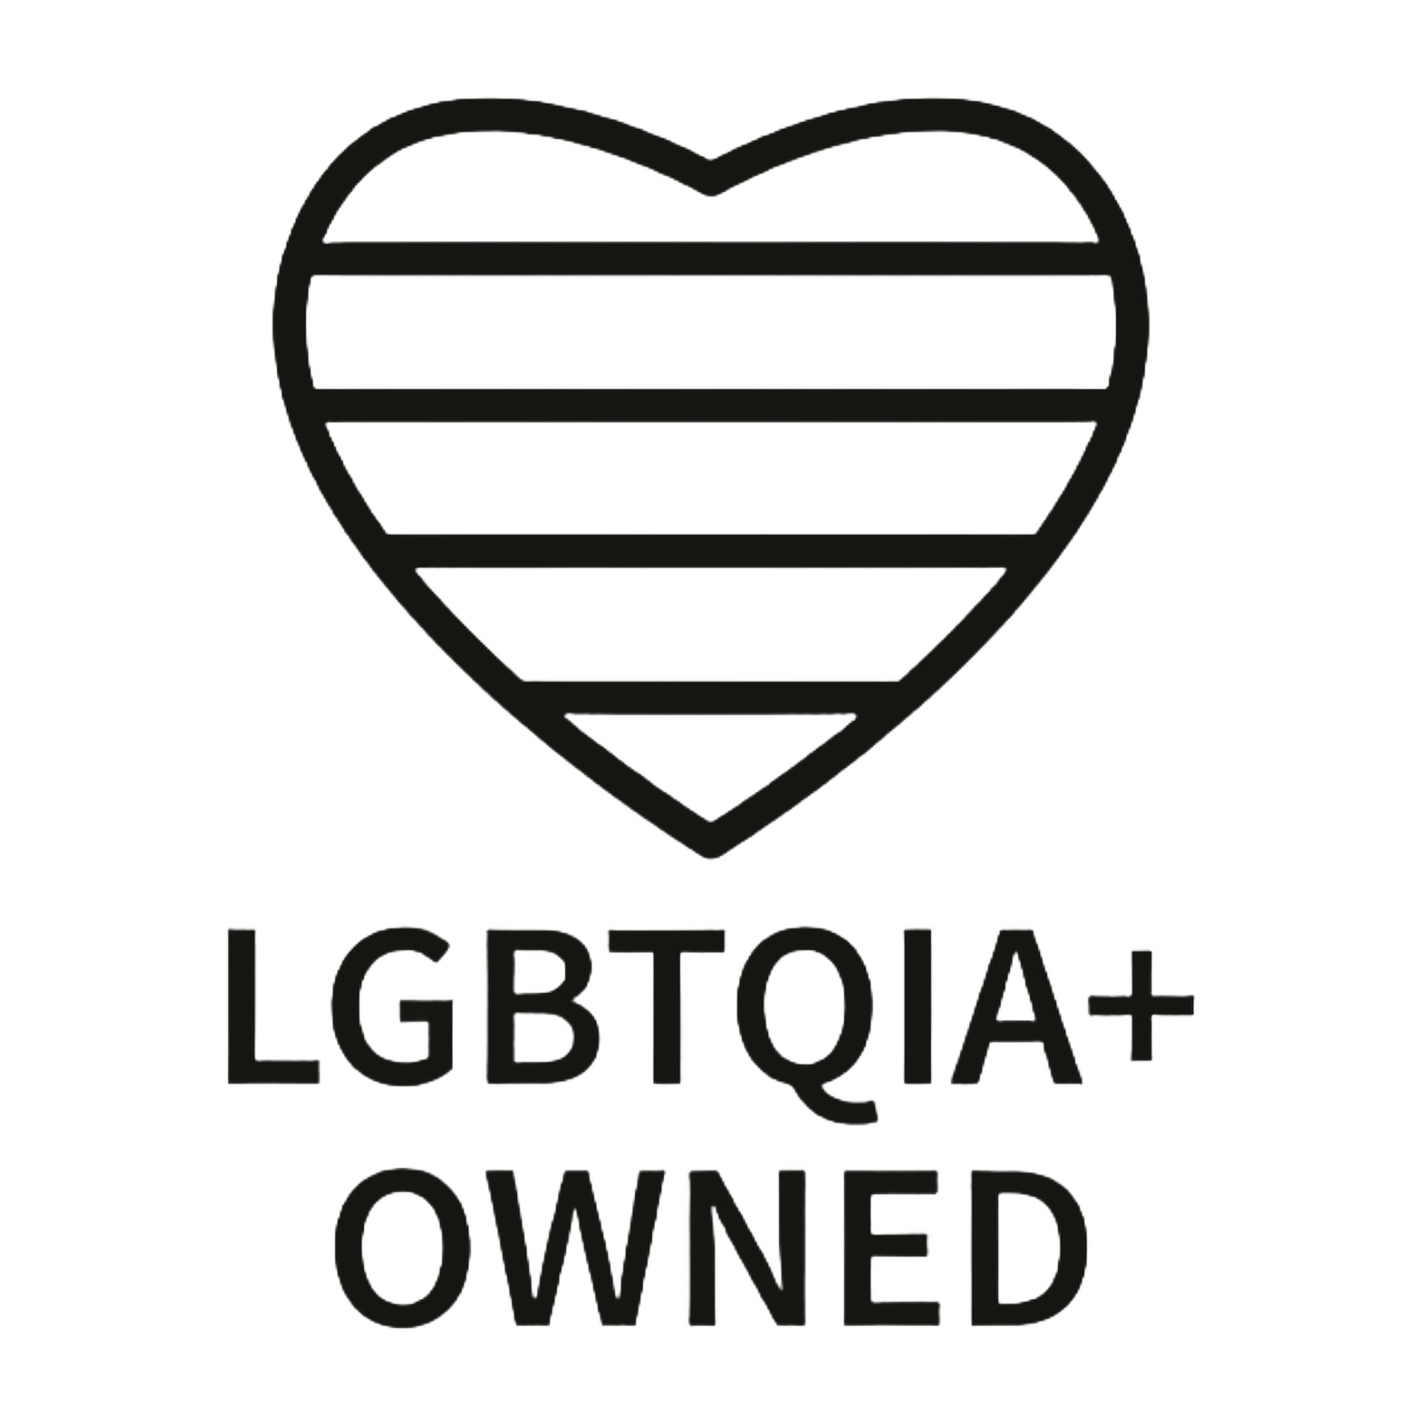 LGBTQIA+ owned